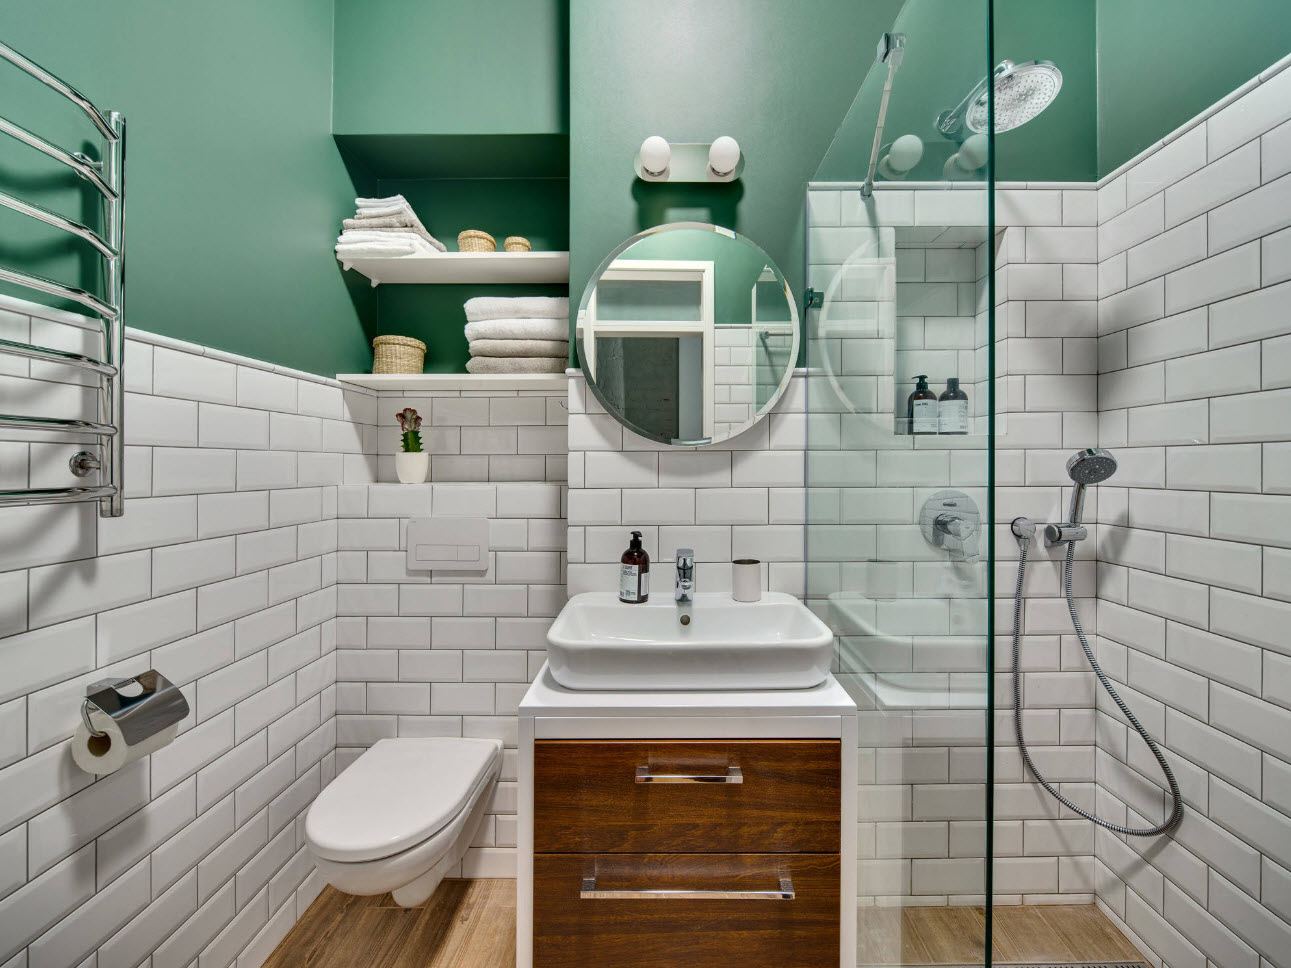 Полка для ванной: организация красивого и практичного места хранения в 100+ идеях